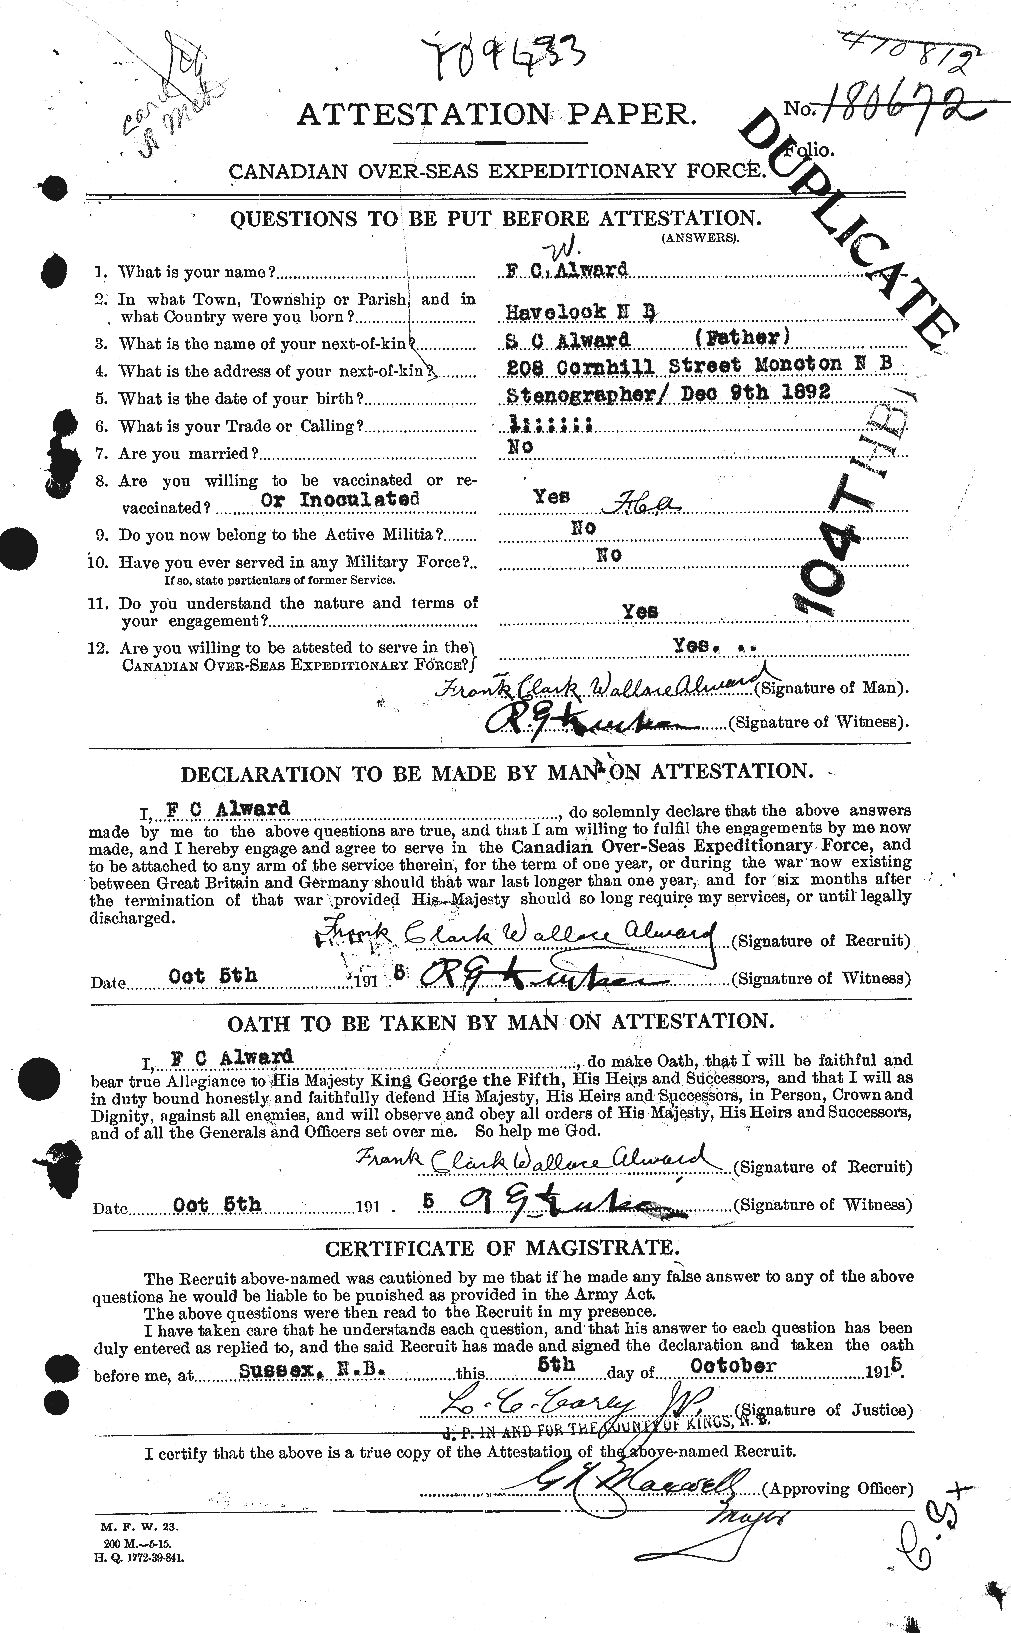 Dossiers du Personnel de la Première Guerre mondiale - CEC 208046a